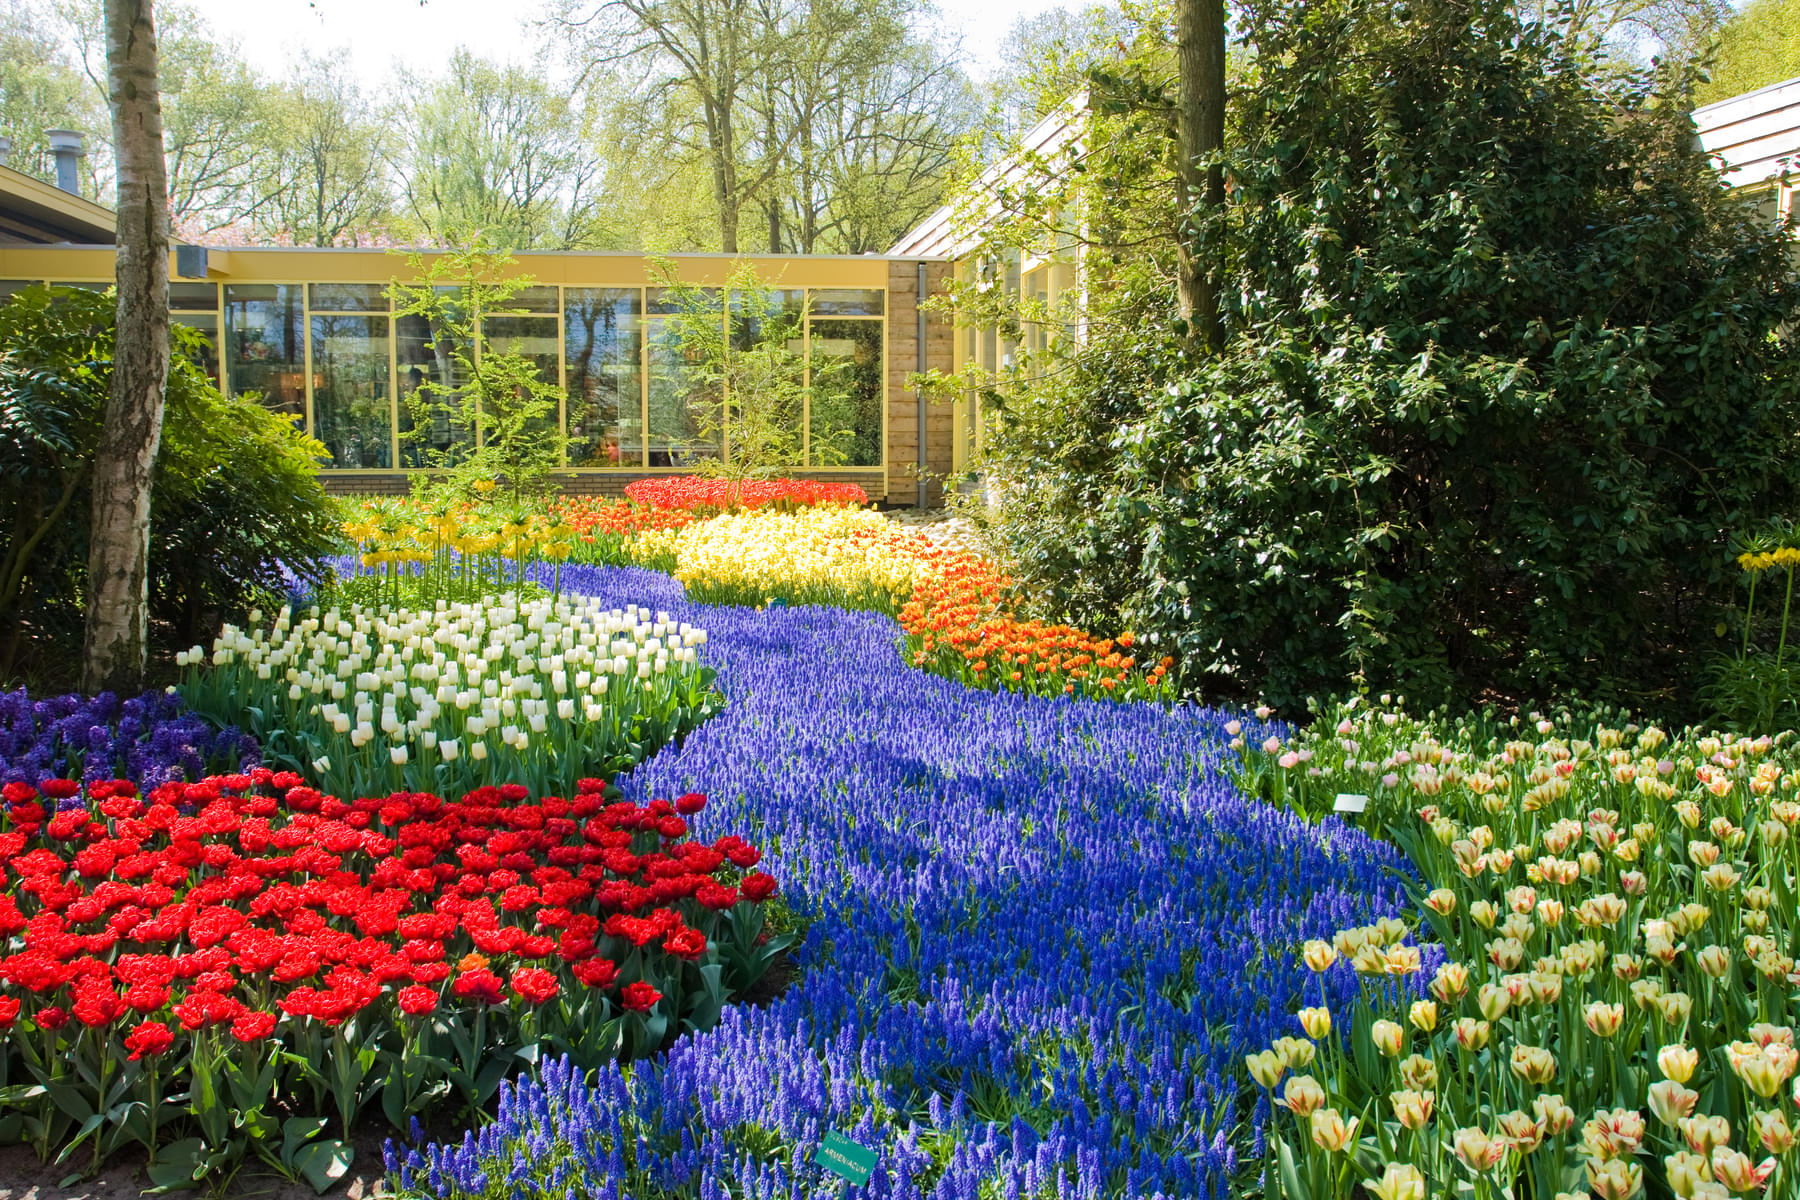 See a range of vibrant flowers in the Keukenhof Gardens